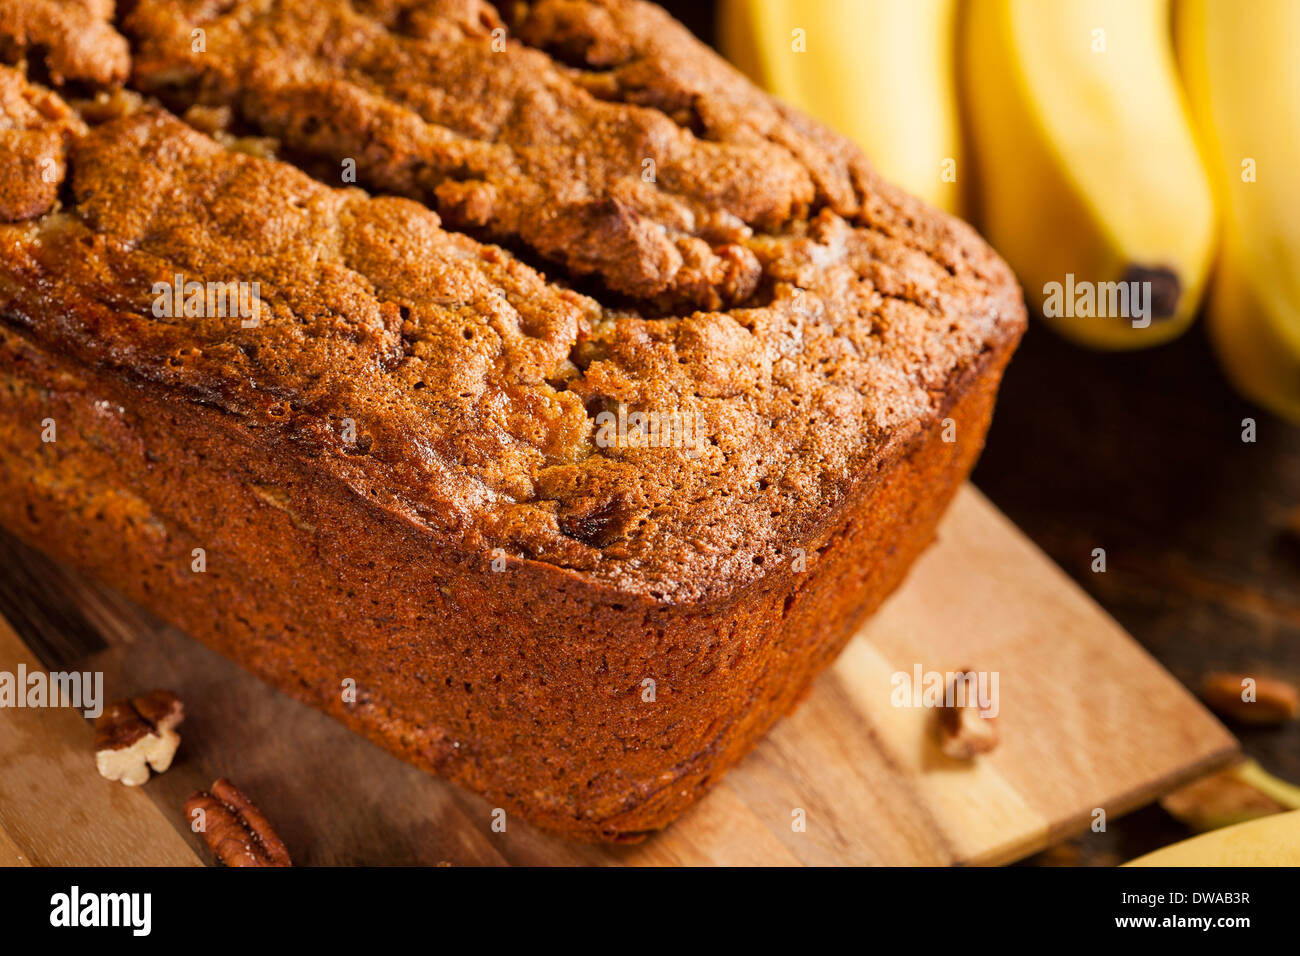 Homemade Banana Nut Bread Cut into Slices Stock Photo